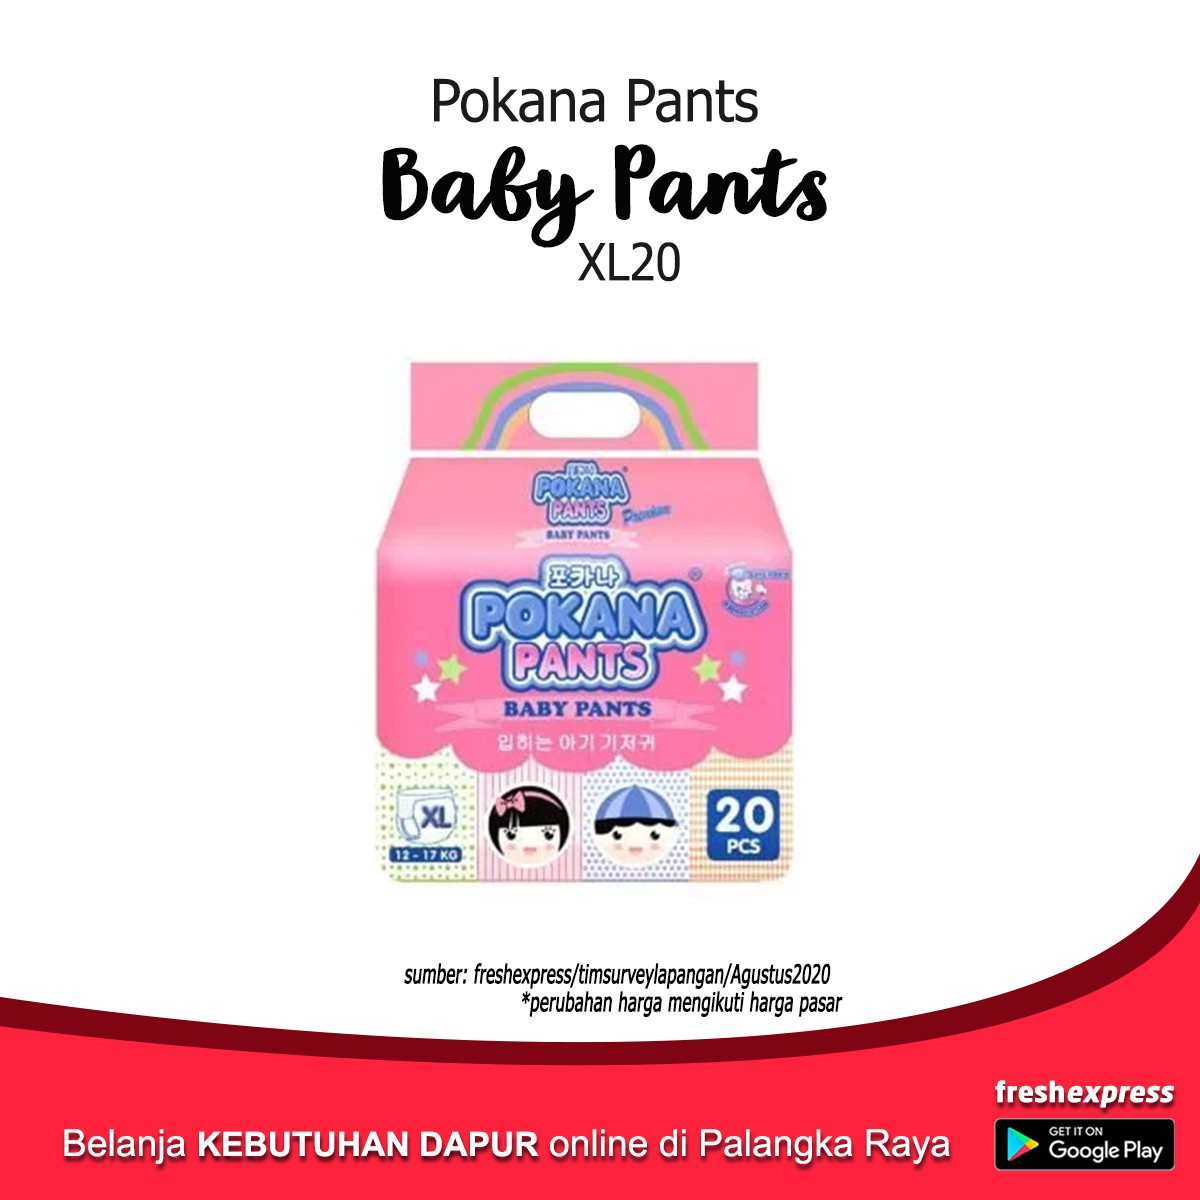 Pokana Pants Baby Pants XL20